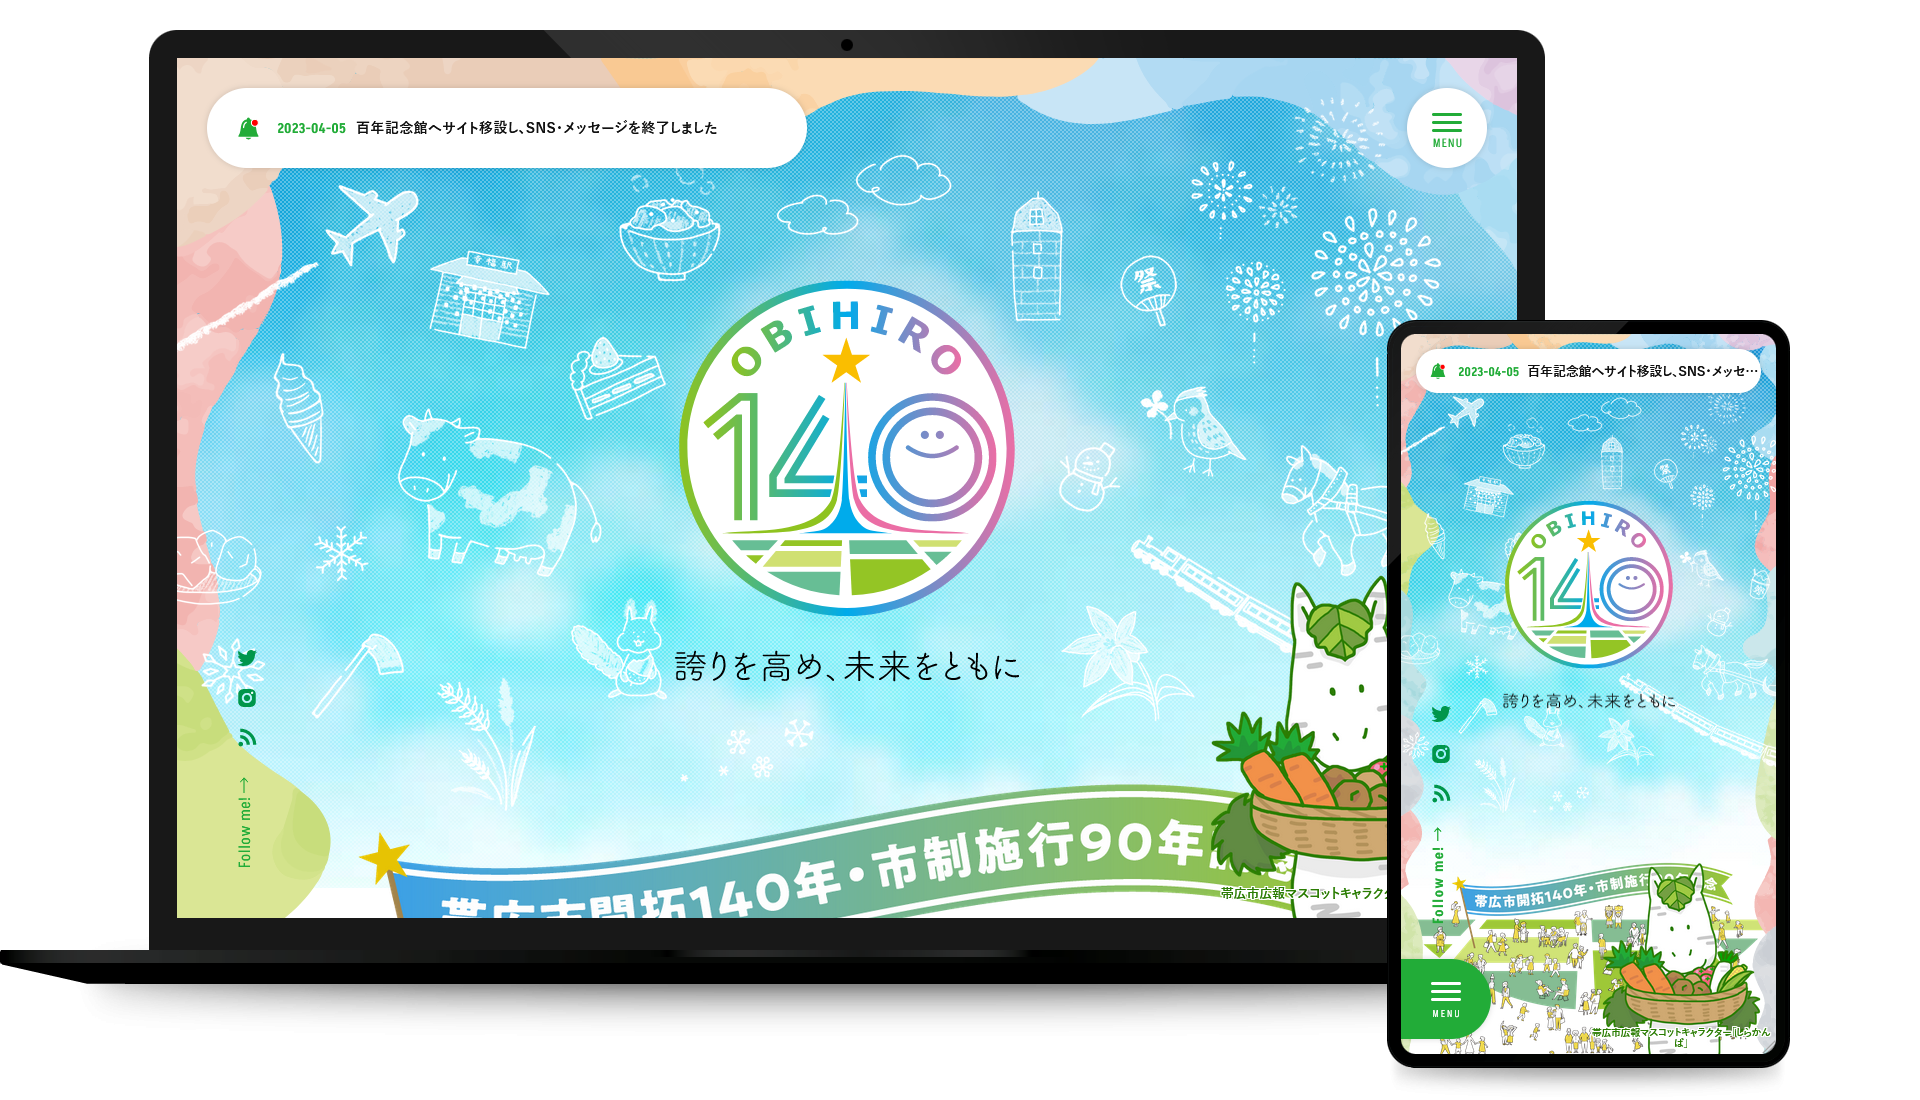 【公式】帯広市開拓140年・市制施行90年記念サイト